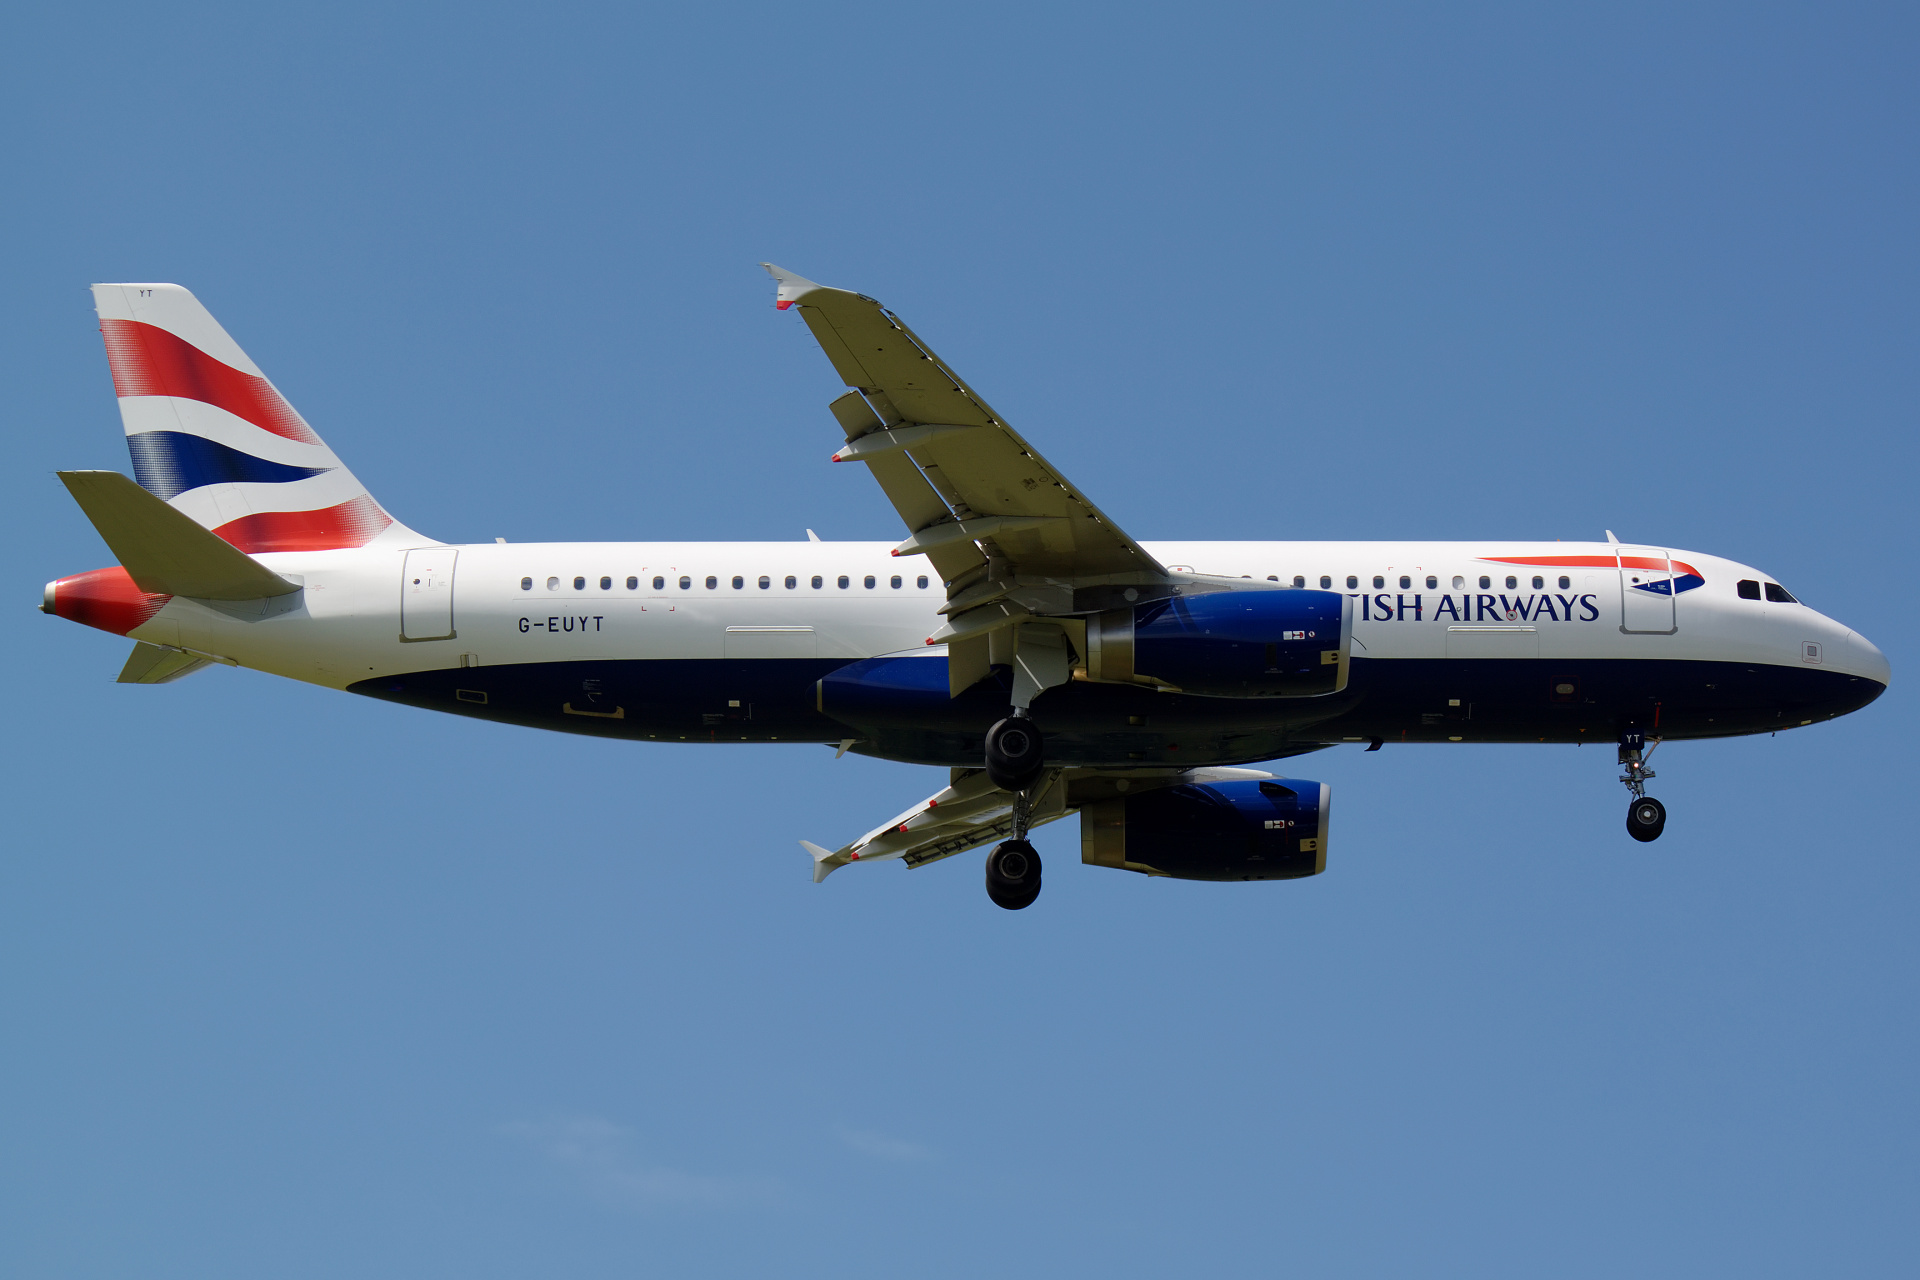 G-EUYT (Aircraft » EPWA Spotting » Airbus A320-200 » British Airways)